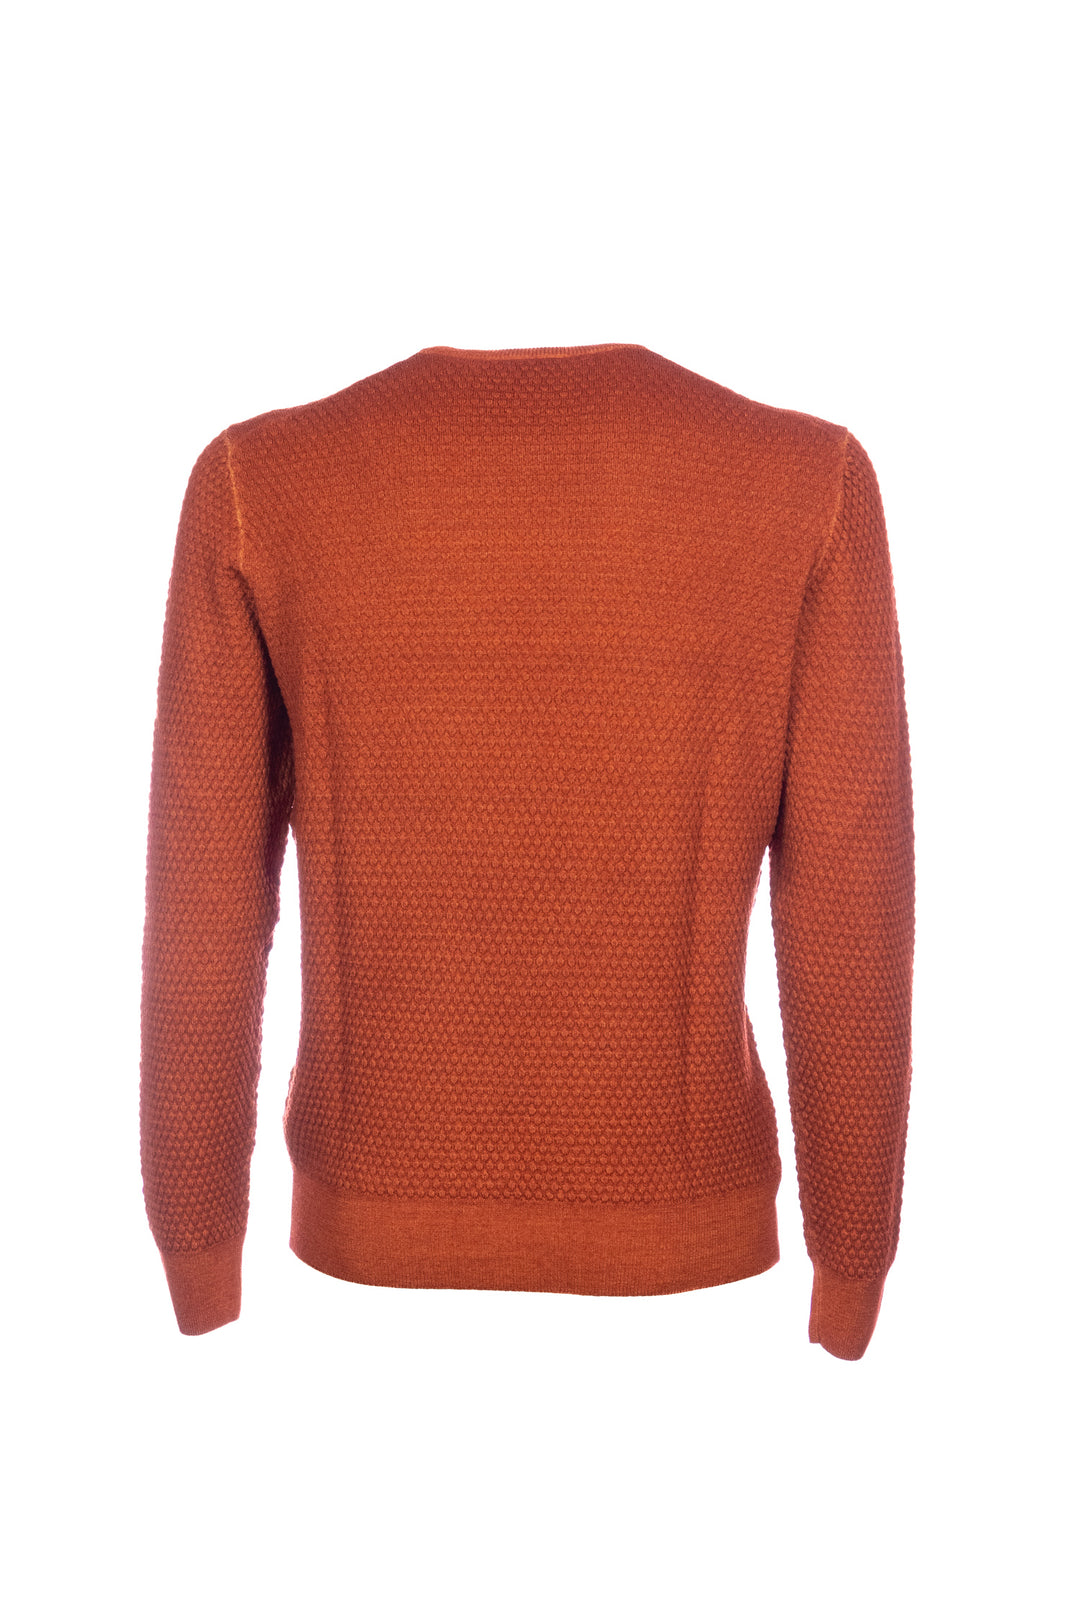 GRAN SASSO Maglia girocollo arancione in lana a micro-rilievo - Mancinelli 1954